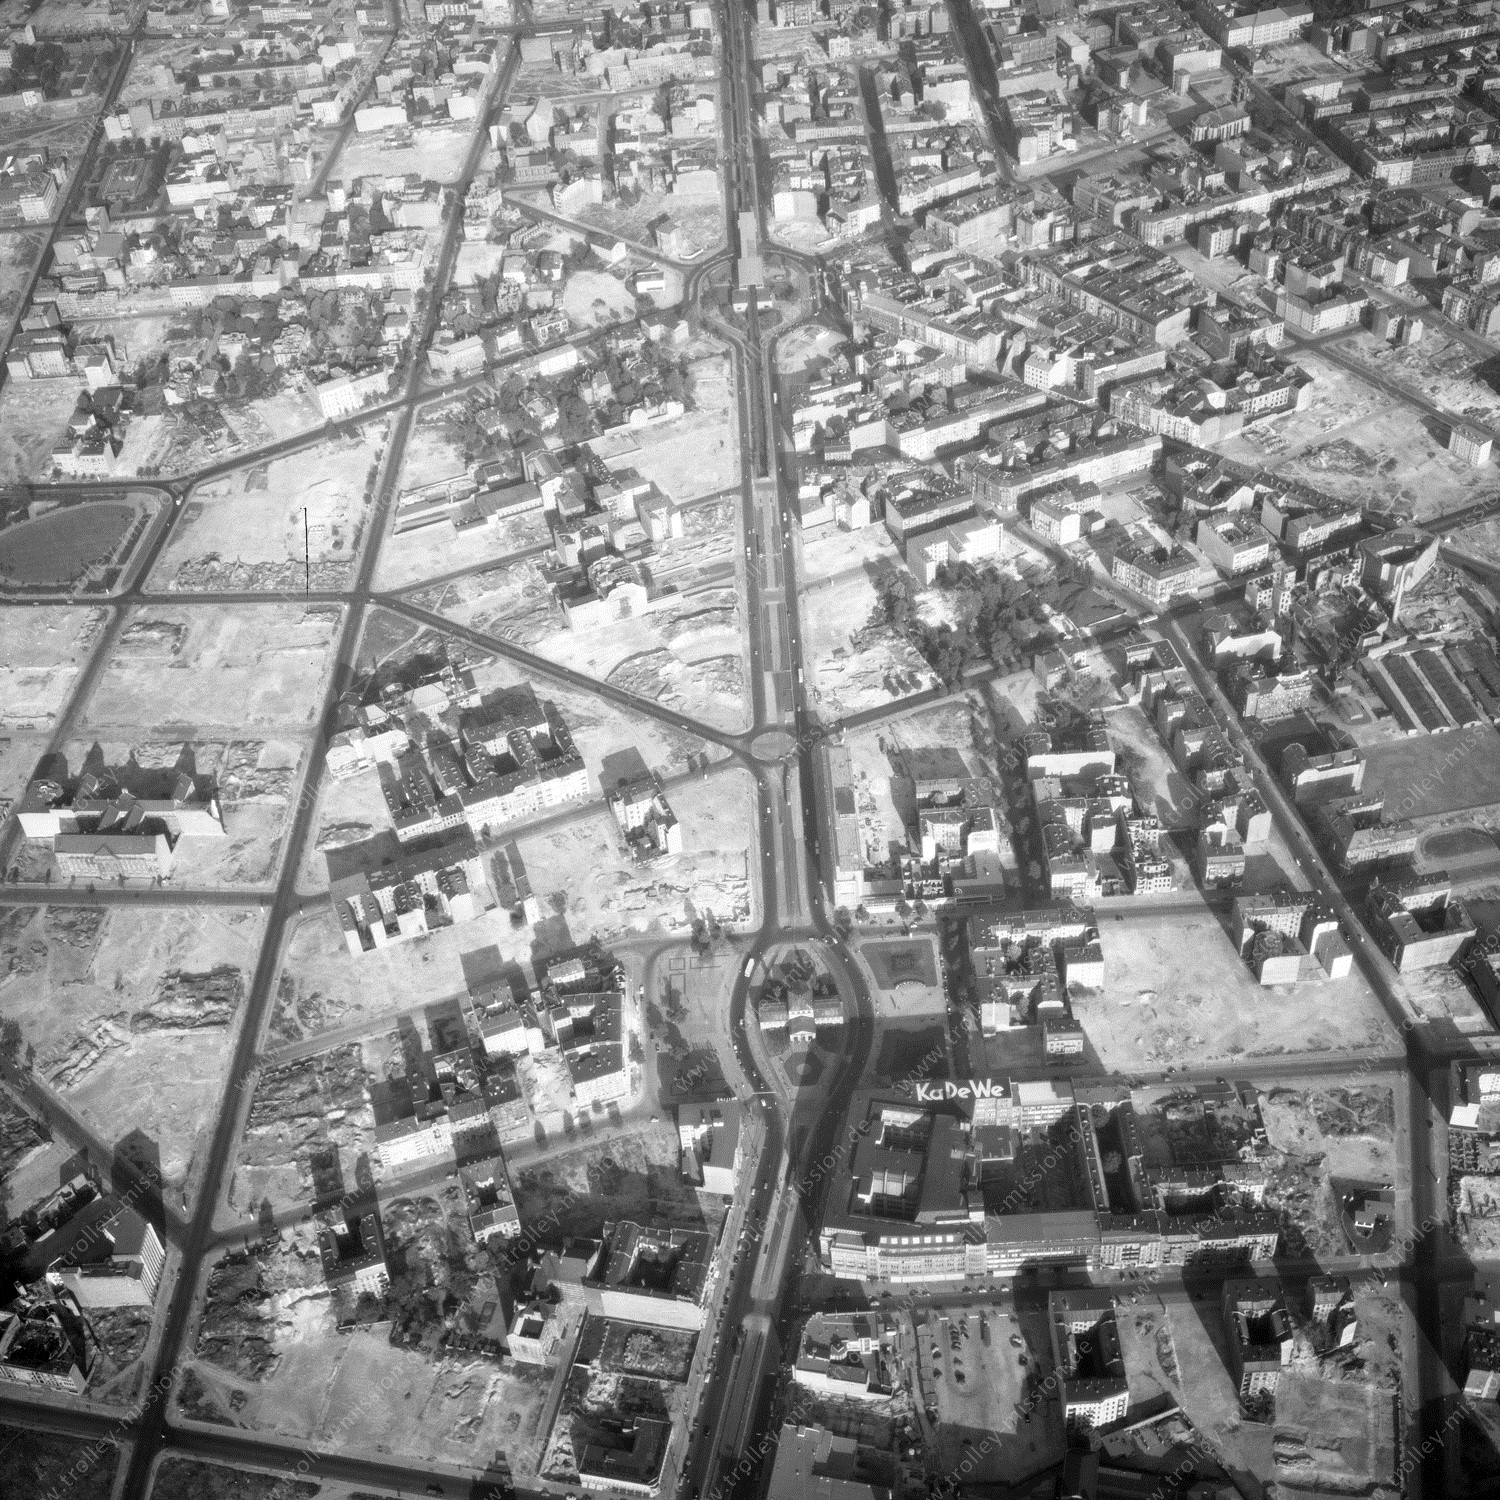 Alte Fotos und Luftbilder von Berlin - Luftbildaufnahme Nr. 10 - Historische Luftaufnahmen von West-Berlin aus dem Jahr 1954 - Flugstrecke Foxtrot